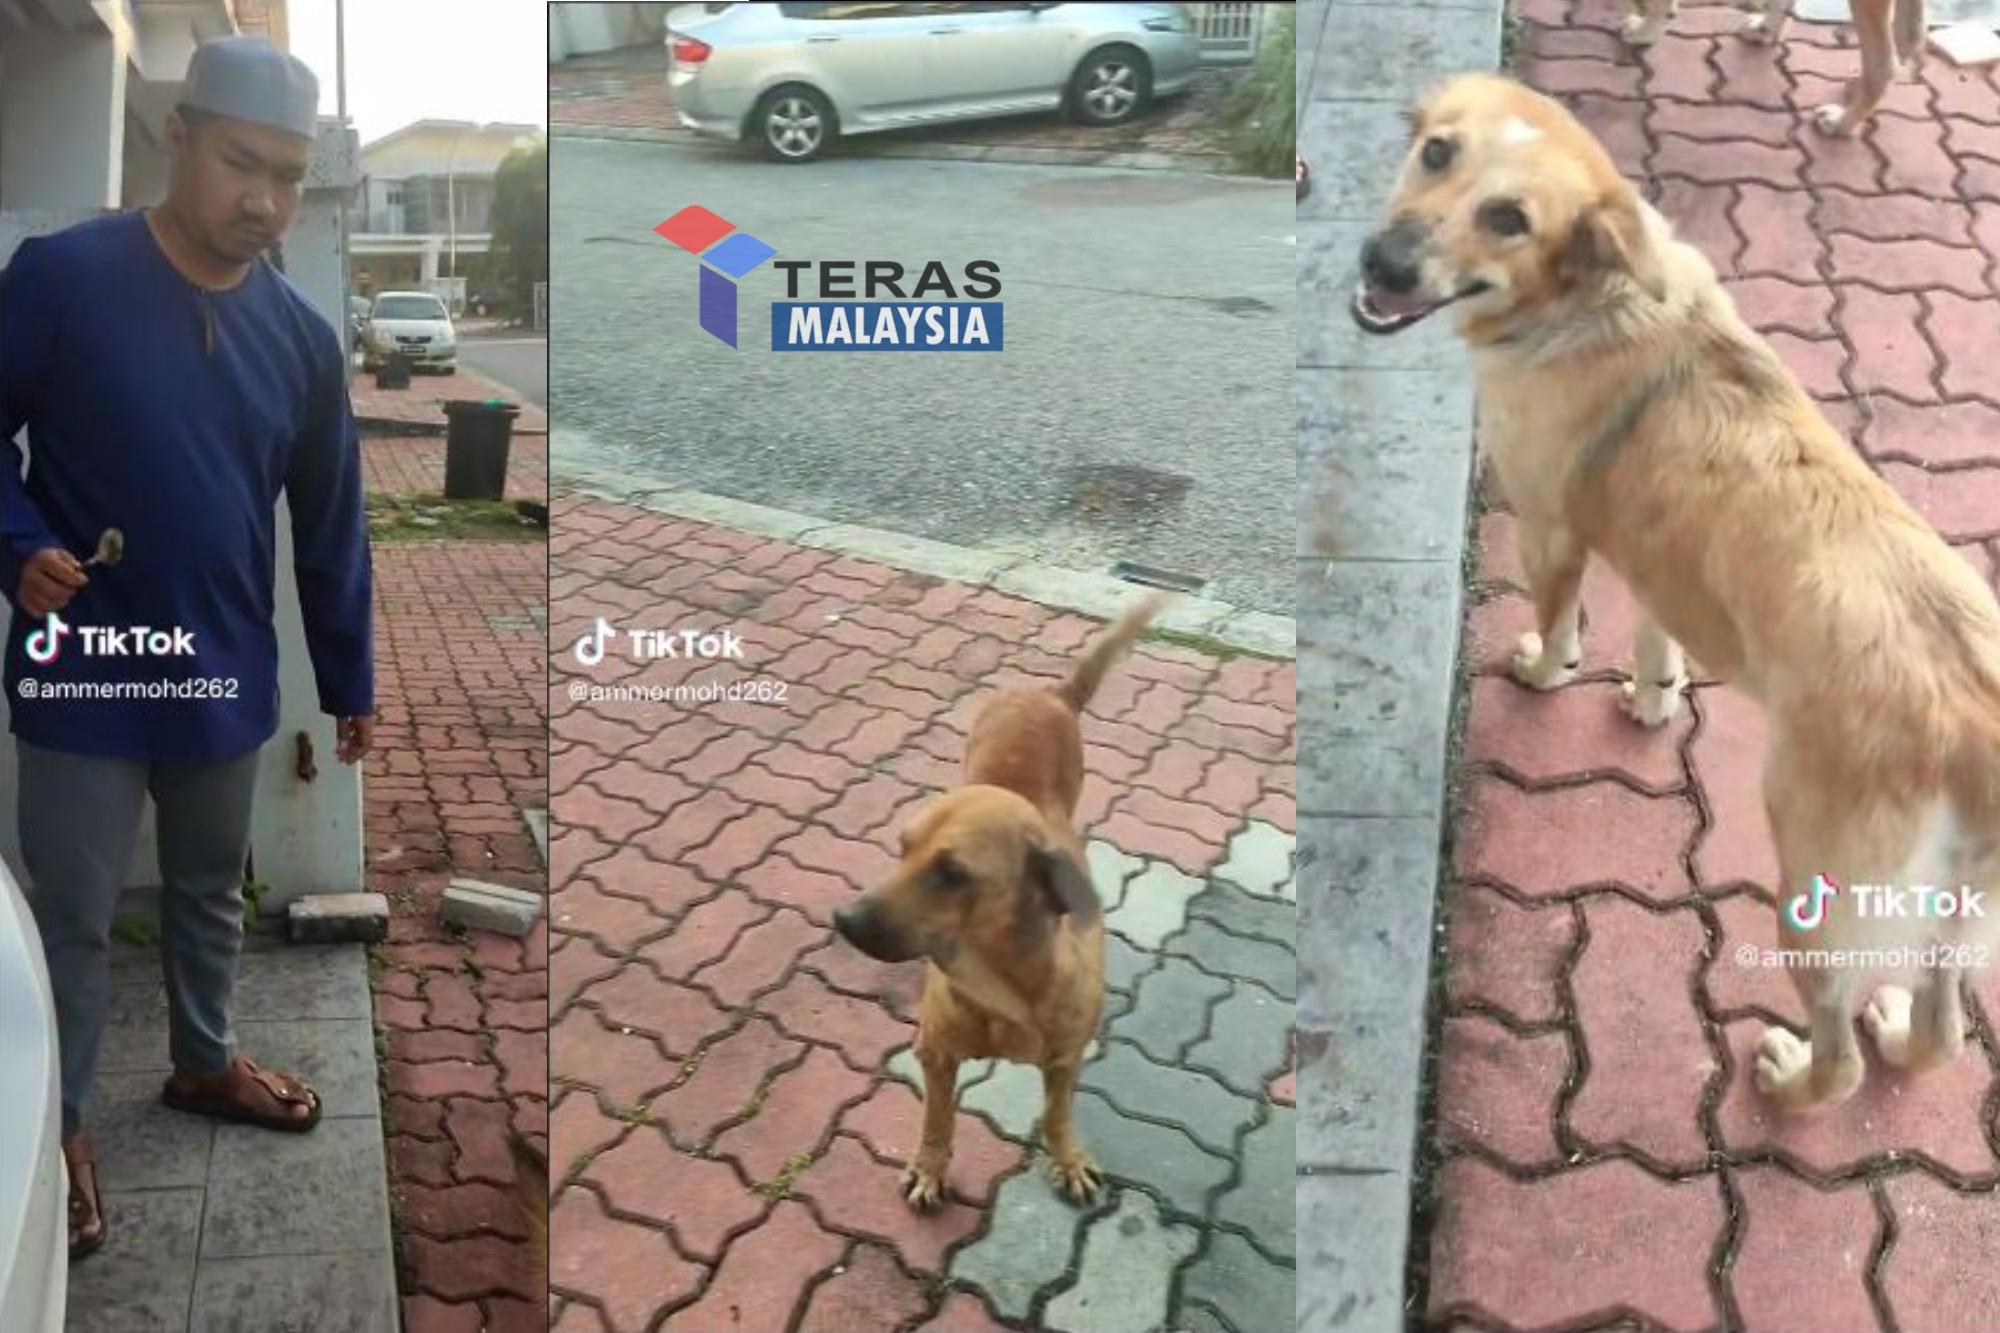 Lelaki berkopiah buat sesuatu pada anjing raih perhatian netizen